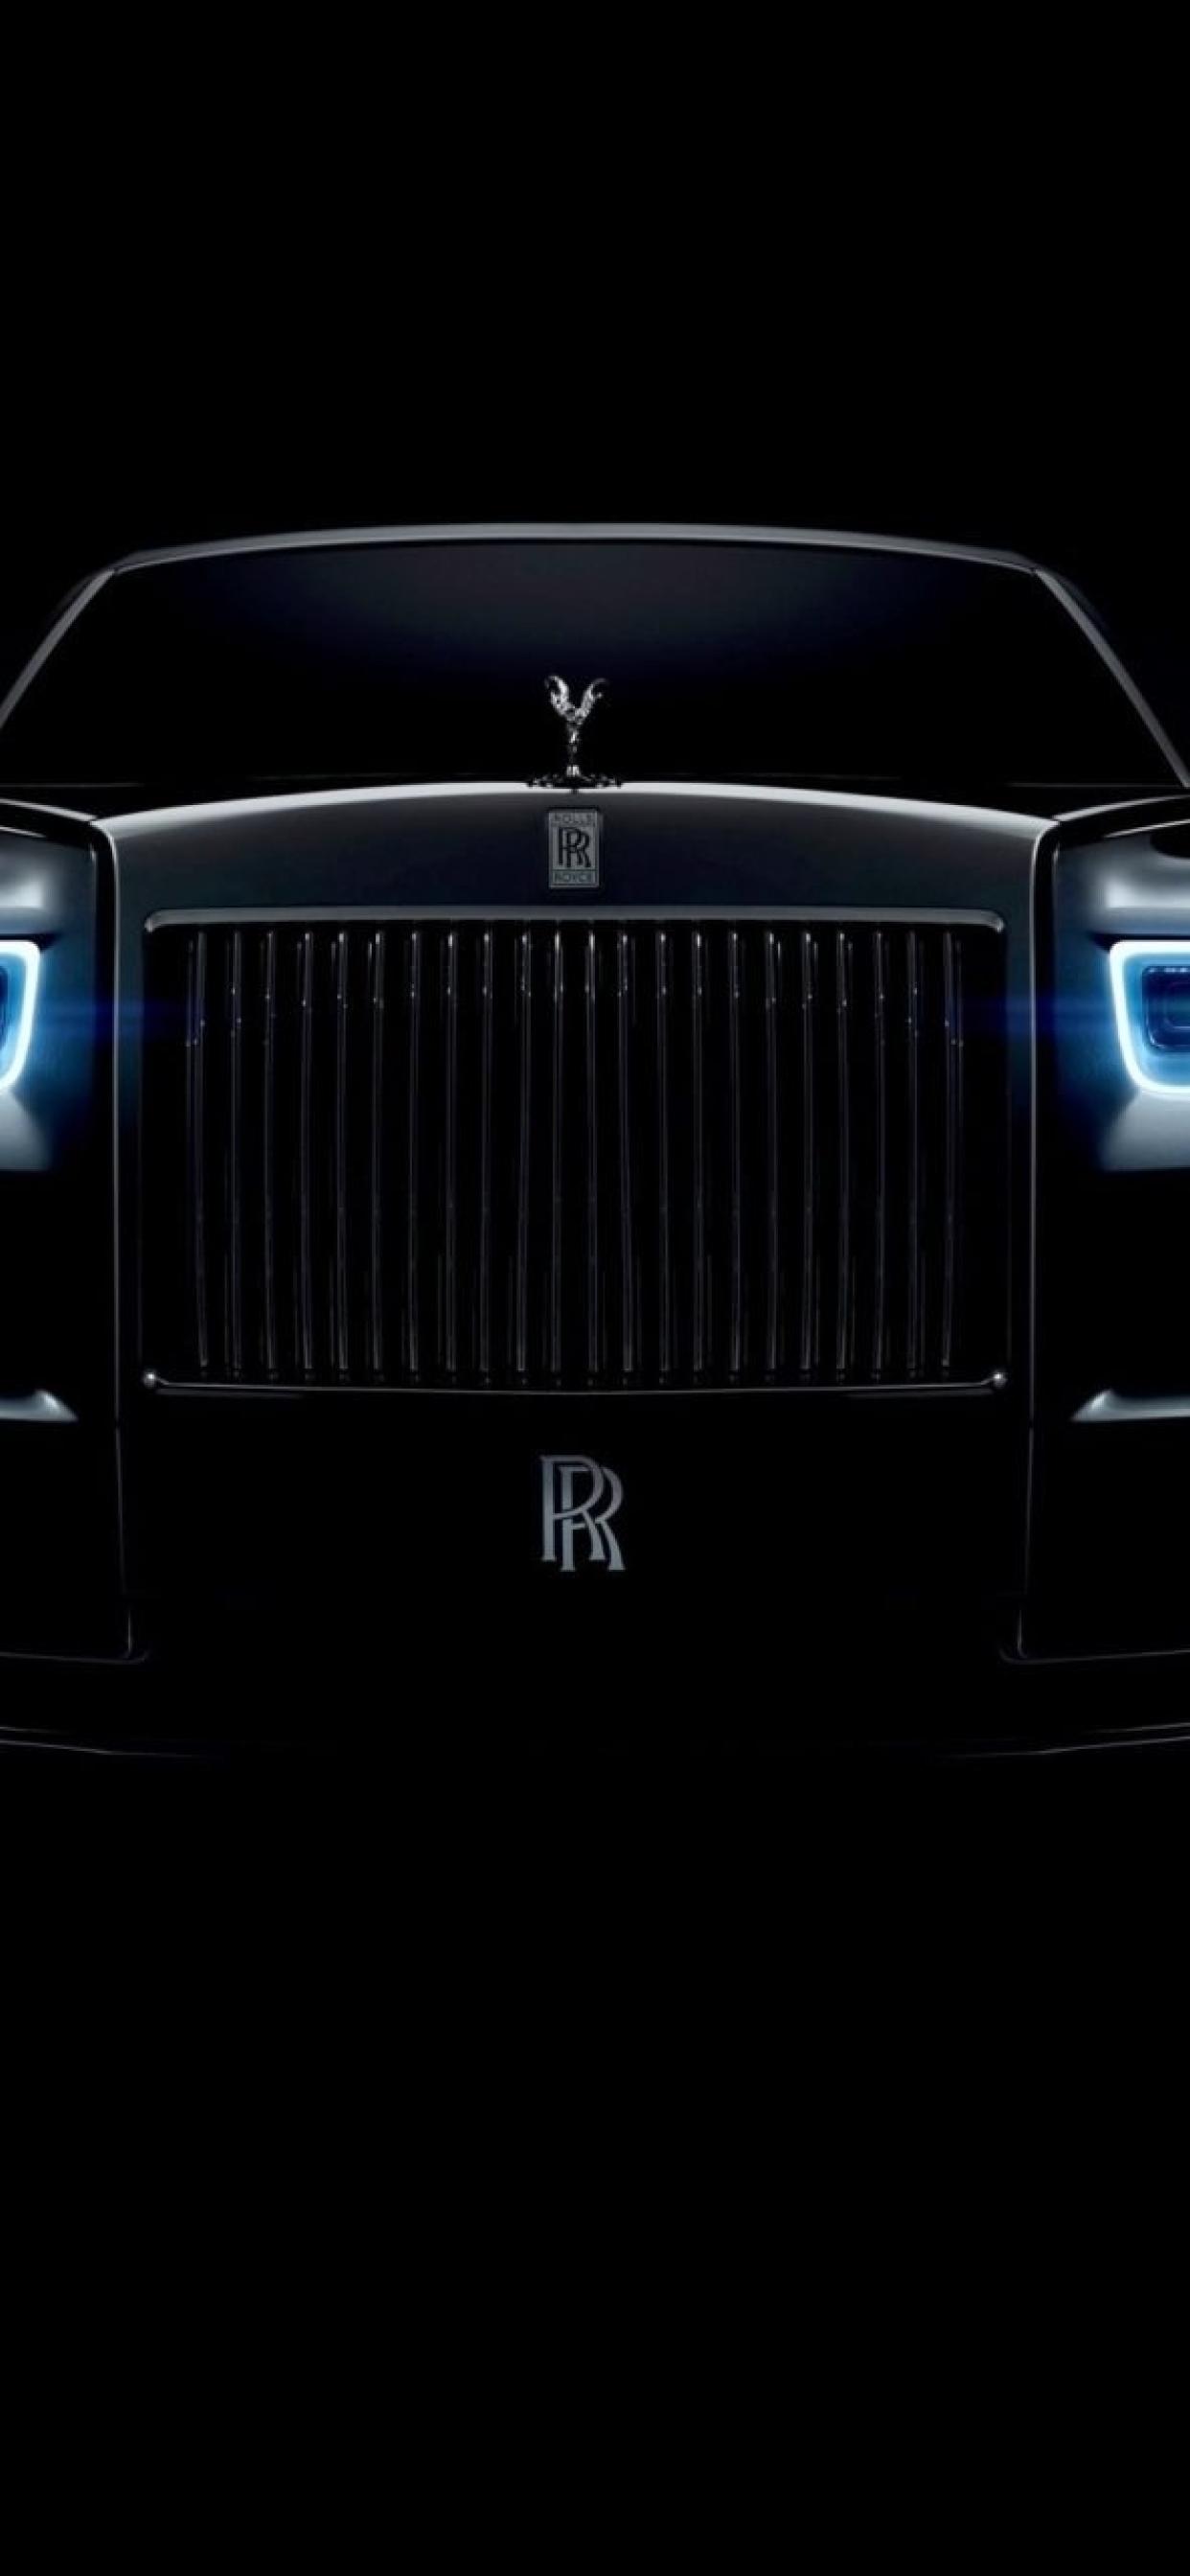 Rolls Royce Logo iPhone Wallpaper HD | Rolls royce logo, Rolls royce, Rolls  royce cars